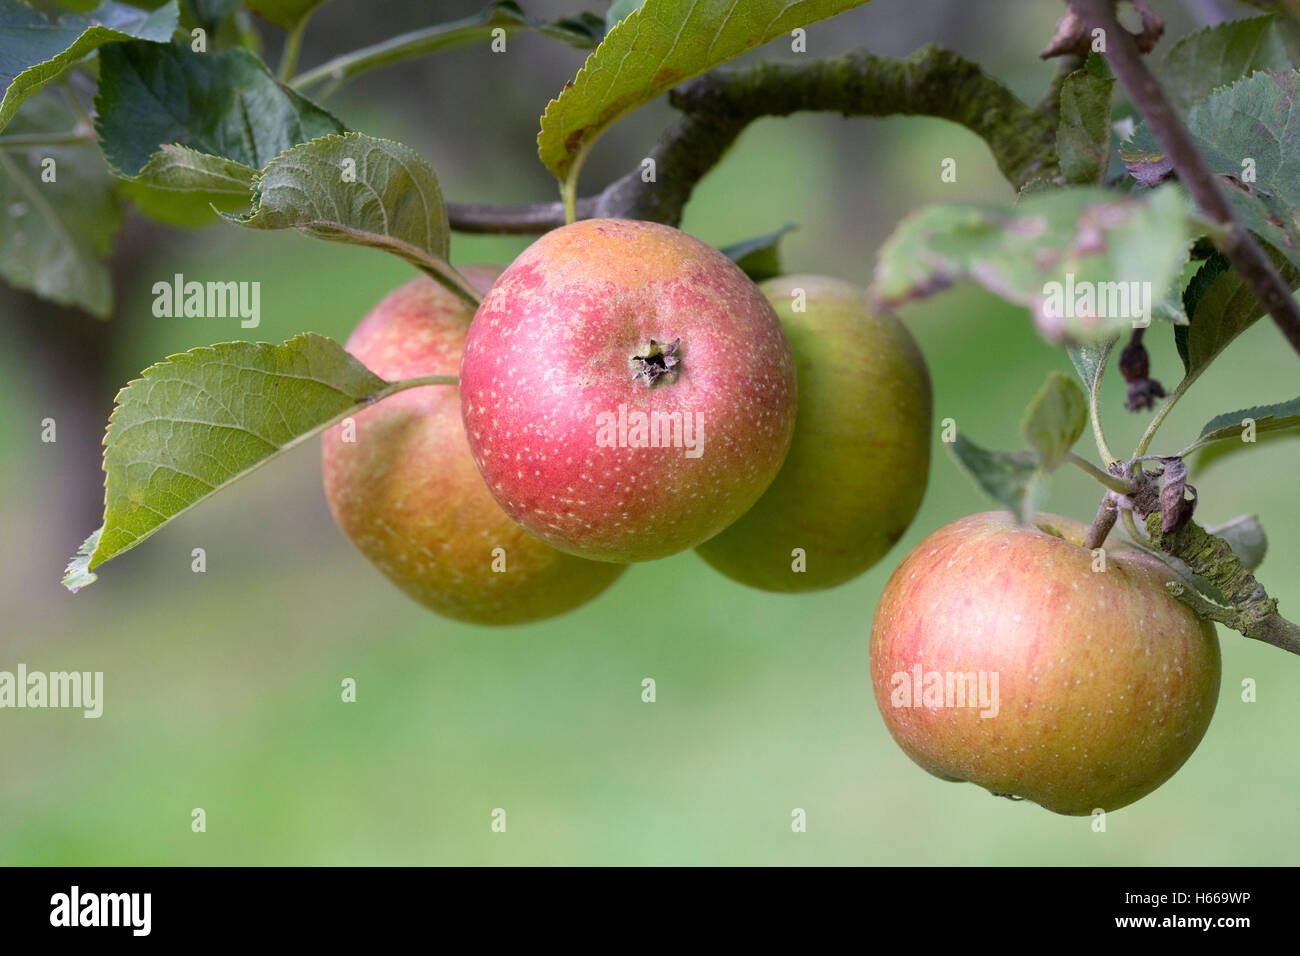 Malus Domestica "Golden fahre". Apple "Heusgens goldenen fahre' wächst in einem englischen Obstgarten. Stockfoto